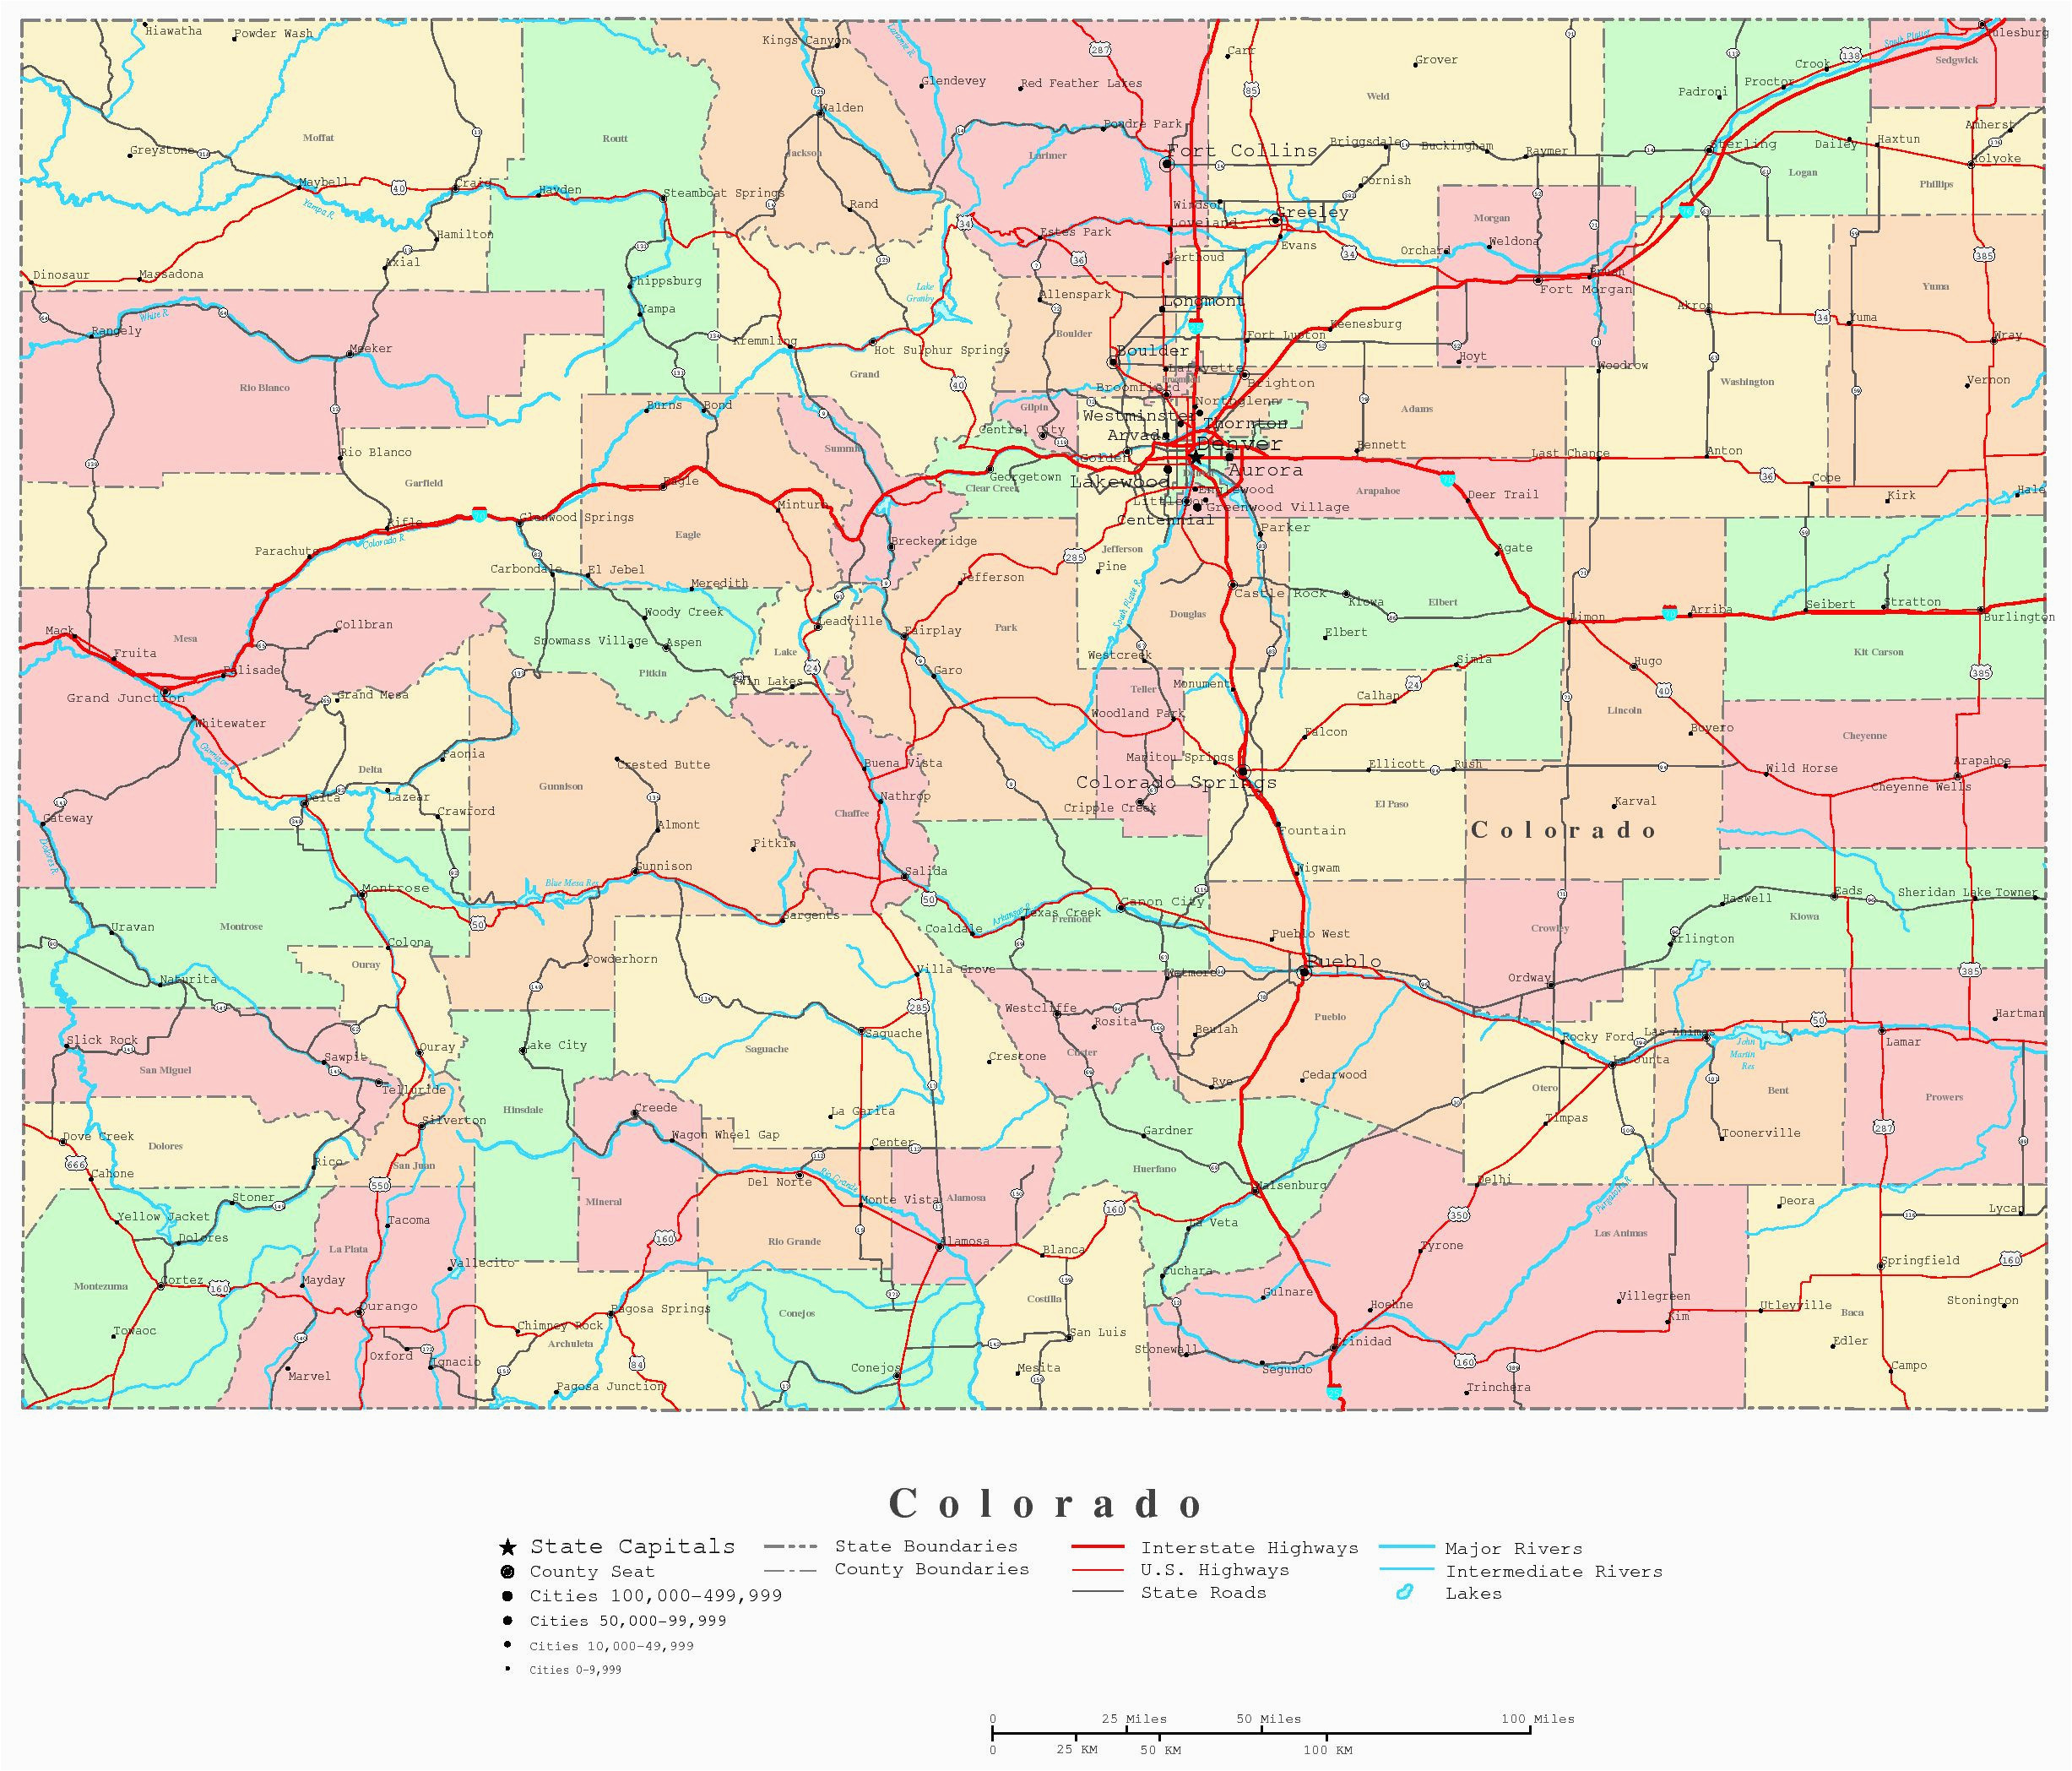 colorado highway map awesome pueblo colorado usa map new pueblo